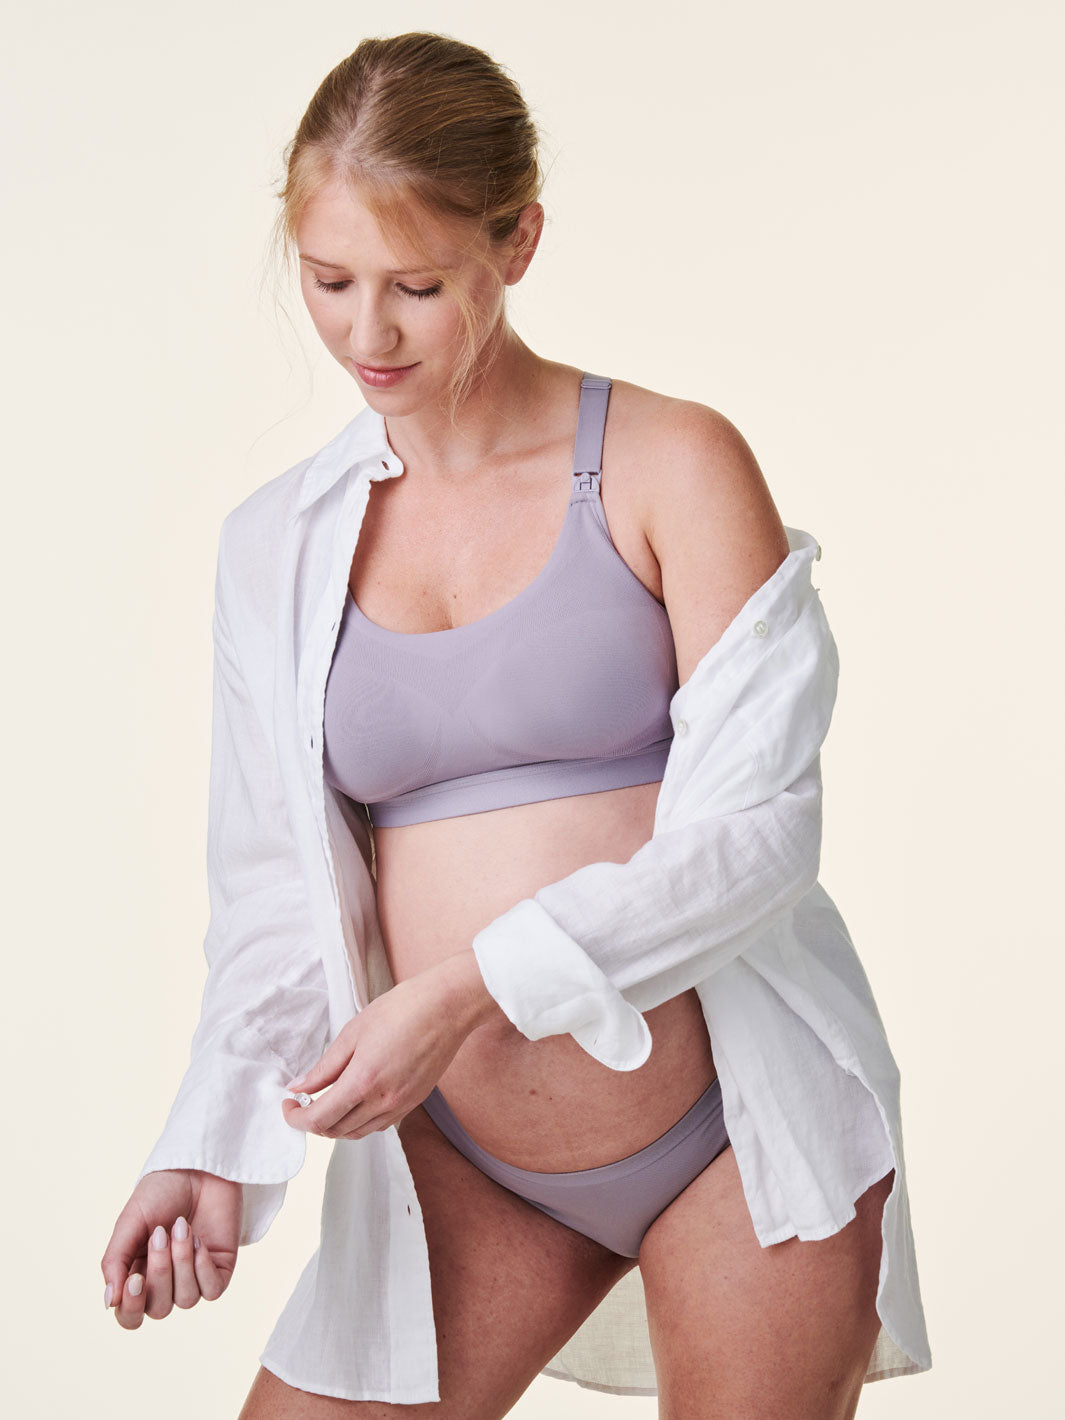 Bravado Designs 1436 Body Silk Seamless Low Impact Sports Nursing